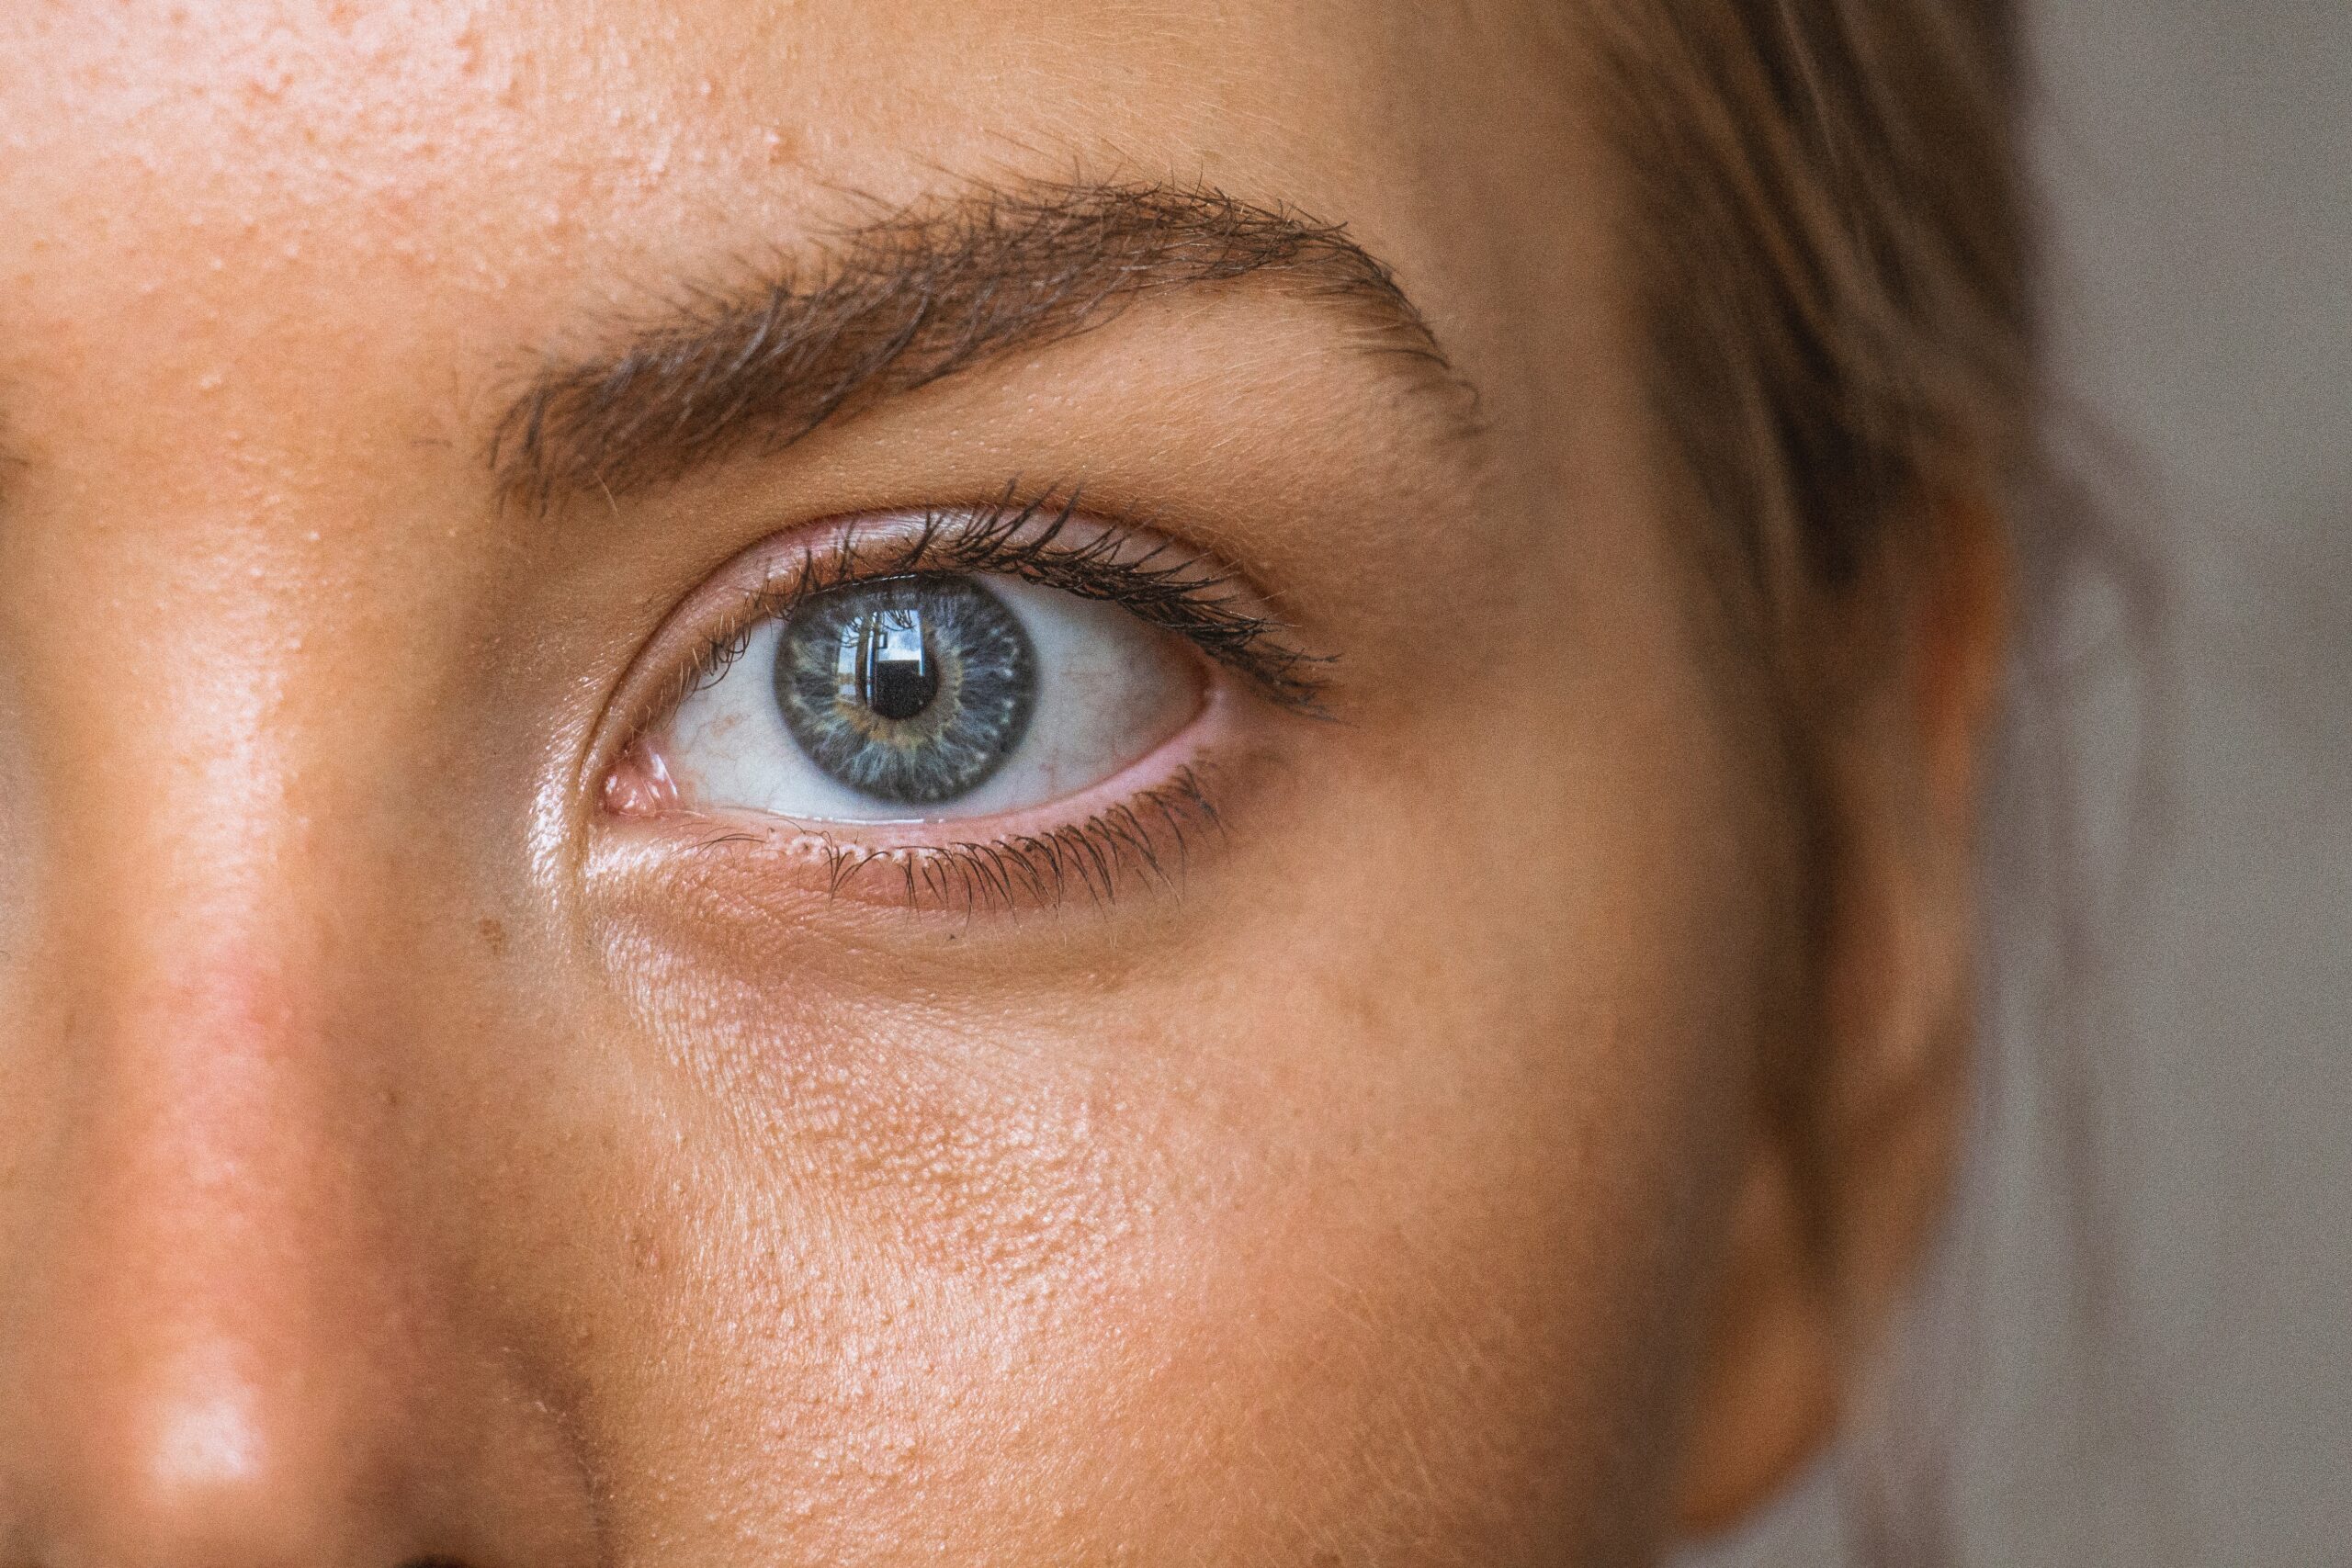 Tips for rejuvenating the eye area